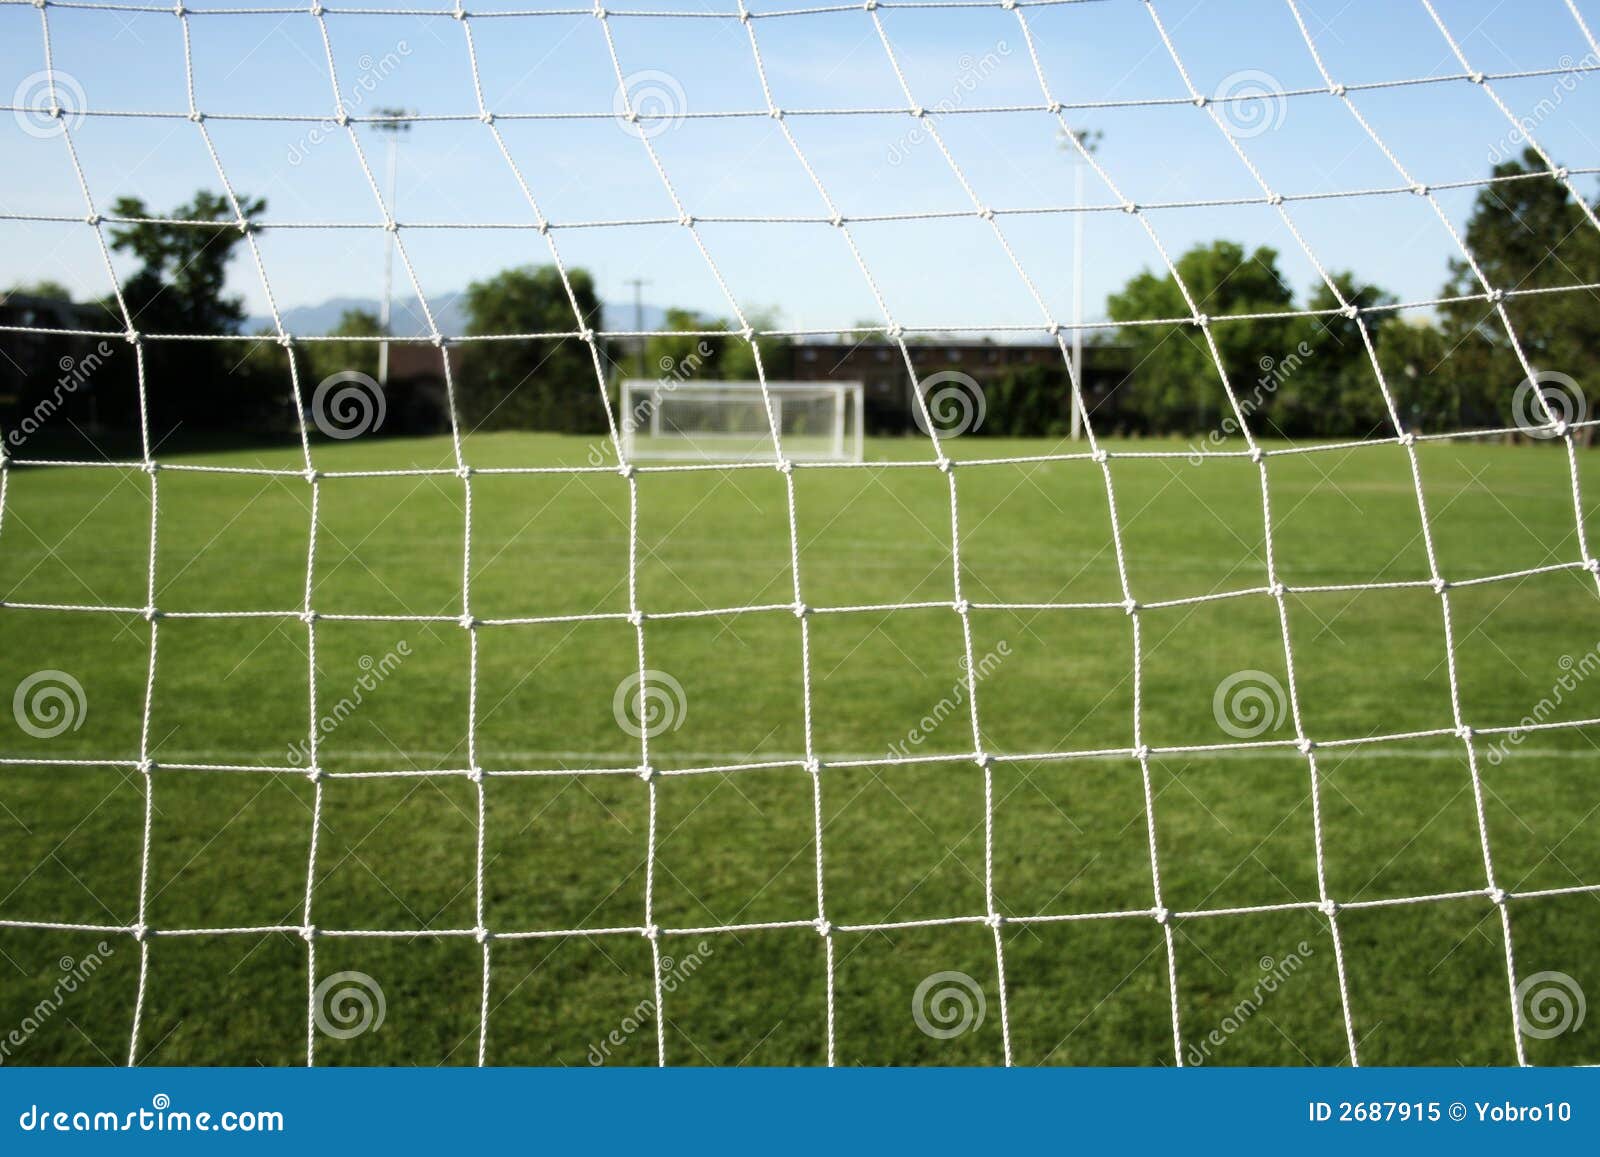 football/soccer netting